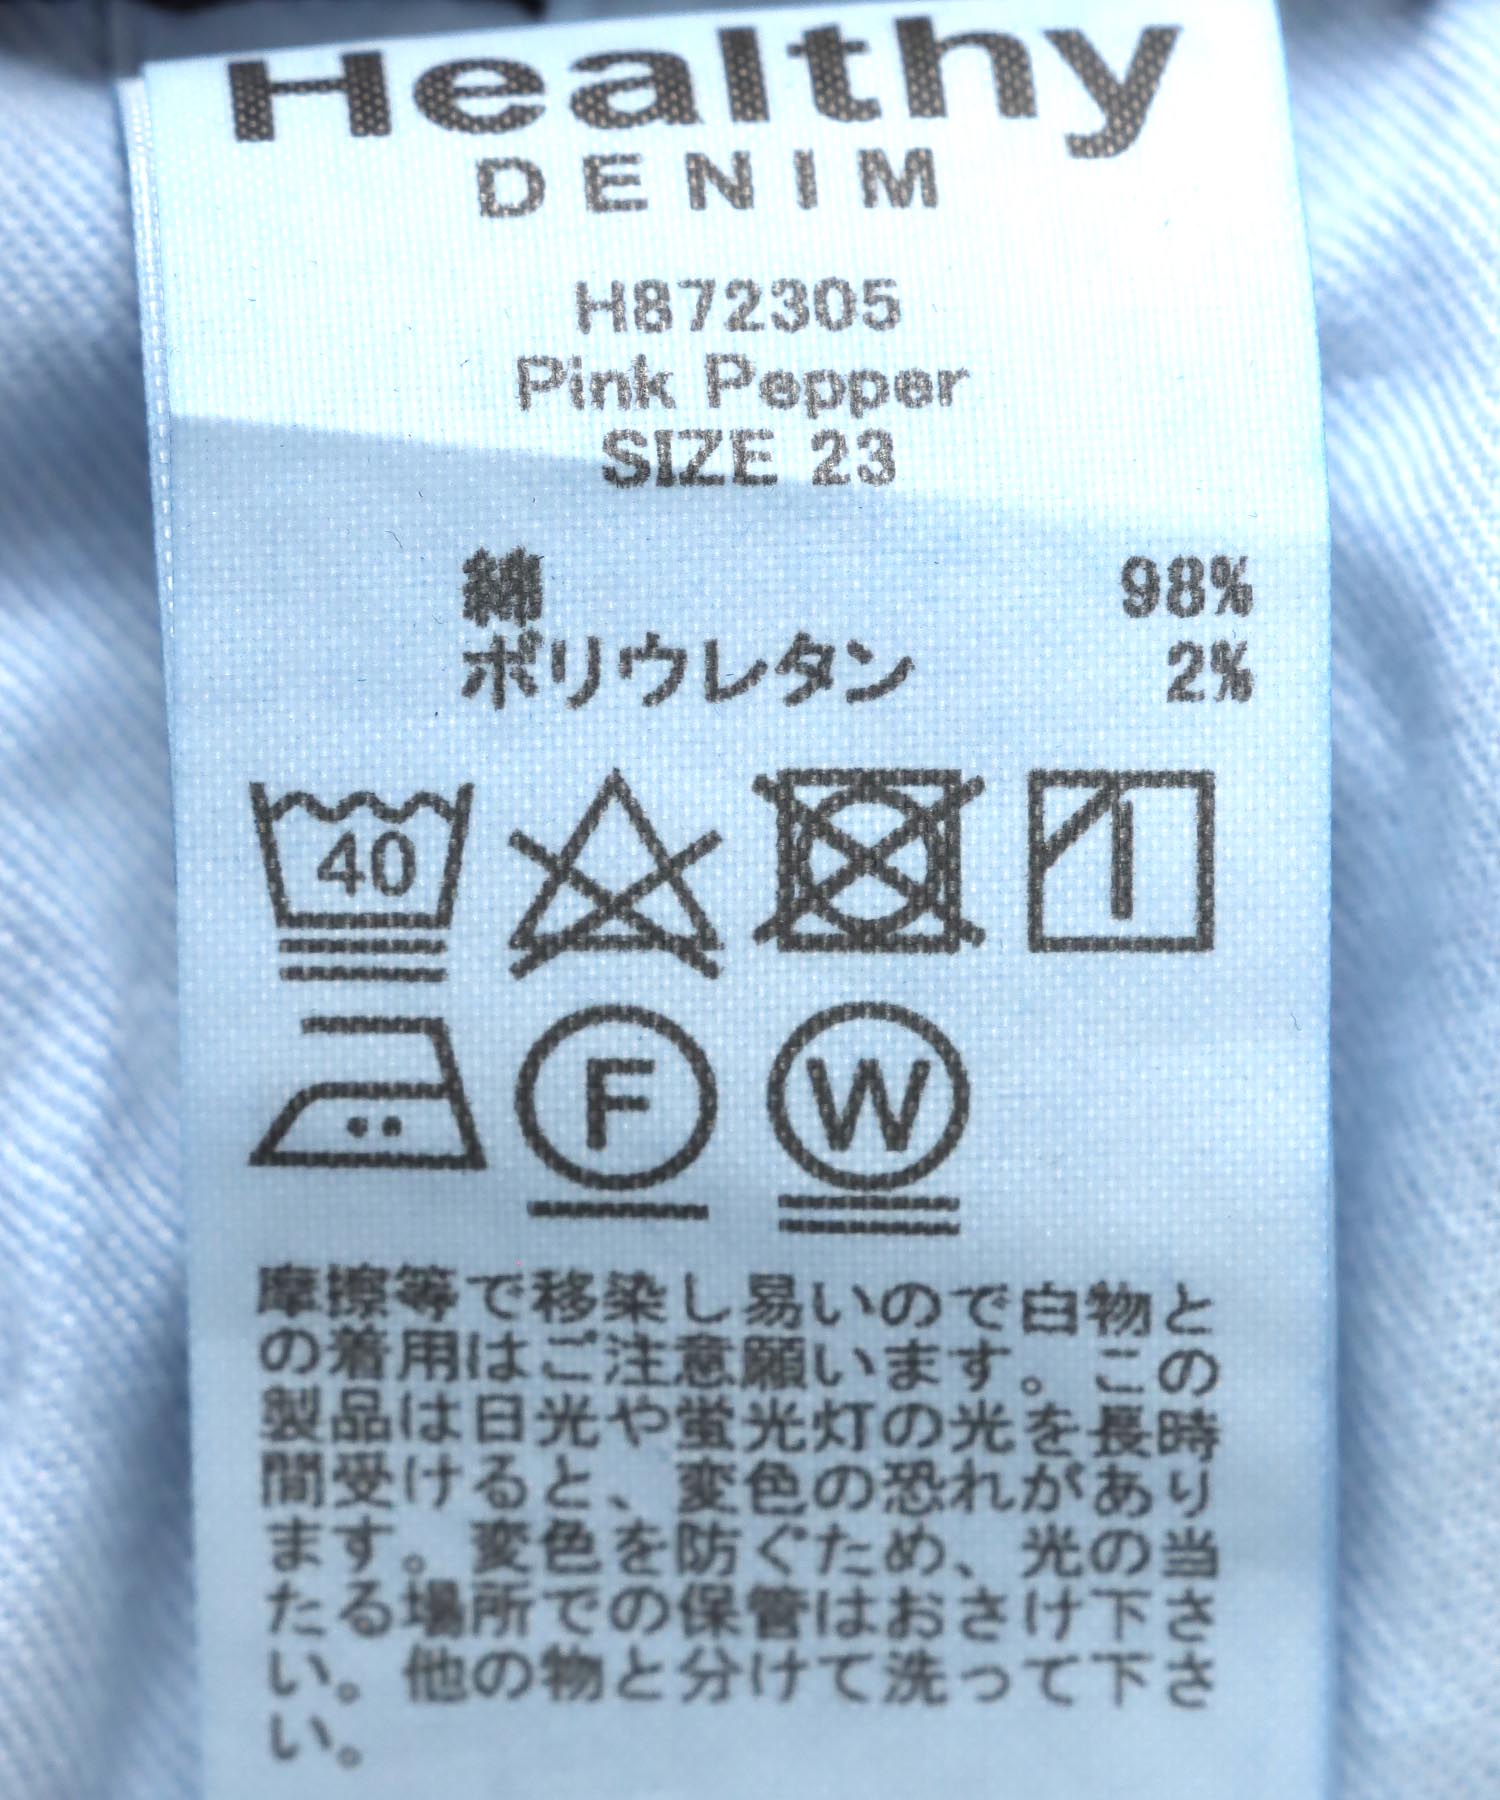 ワイドストレートデニムパンツ Pink Pepper【Healthy DENIM/ヘルシーデニム】